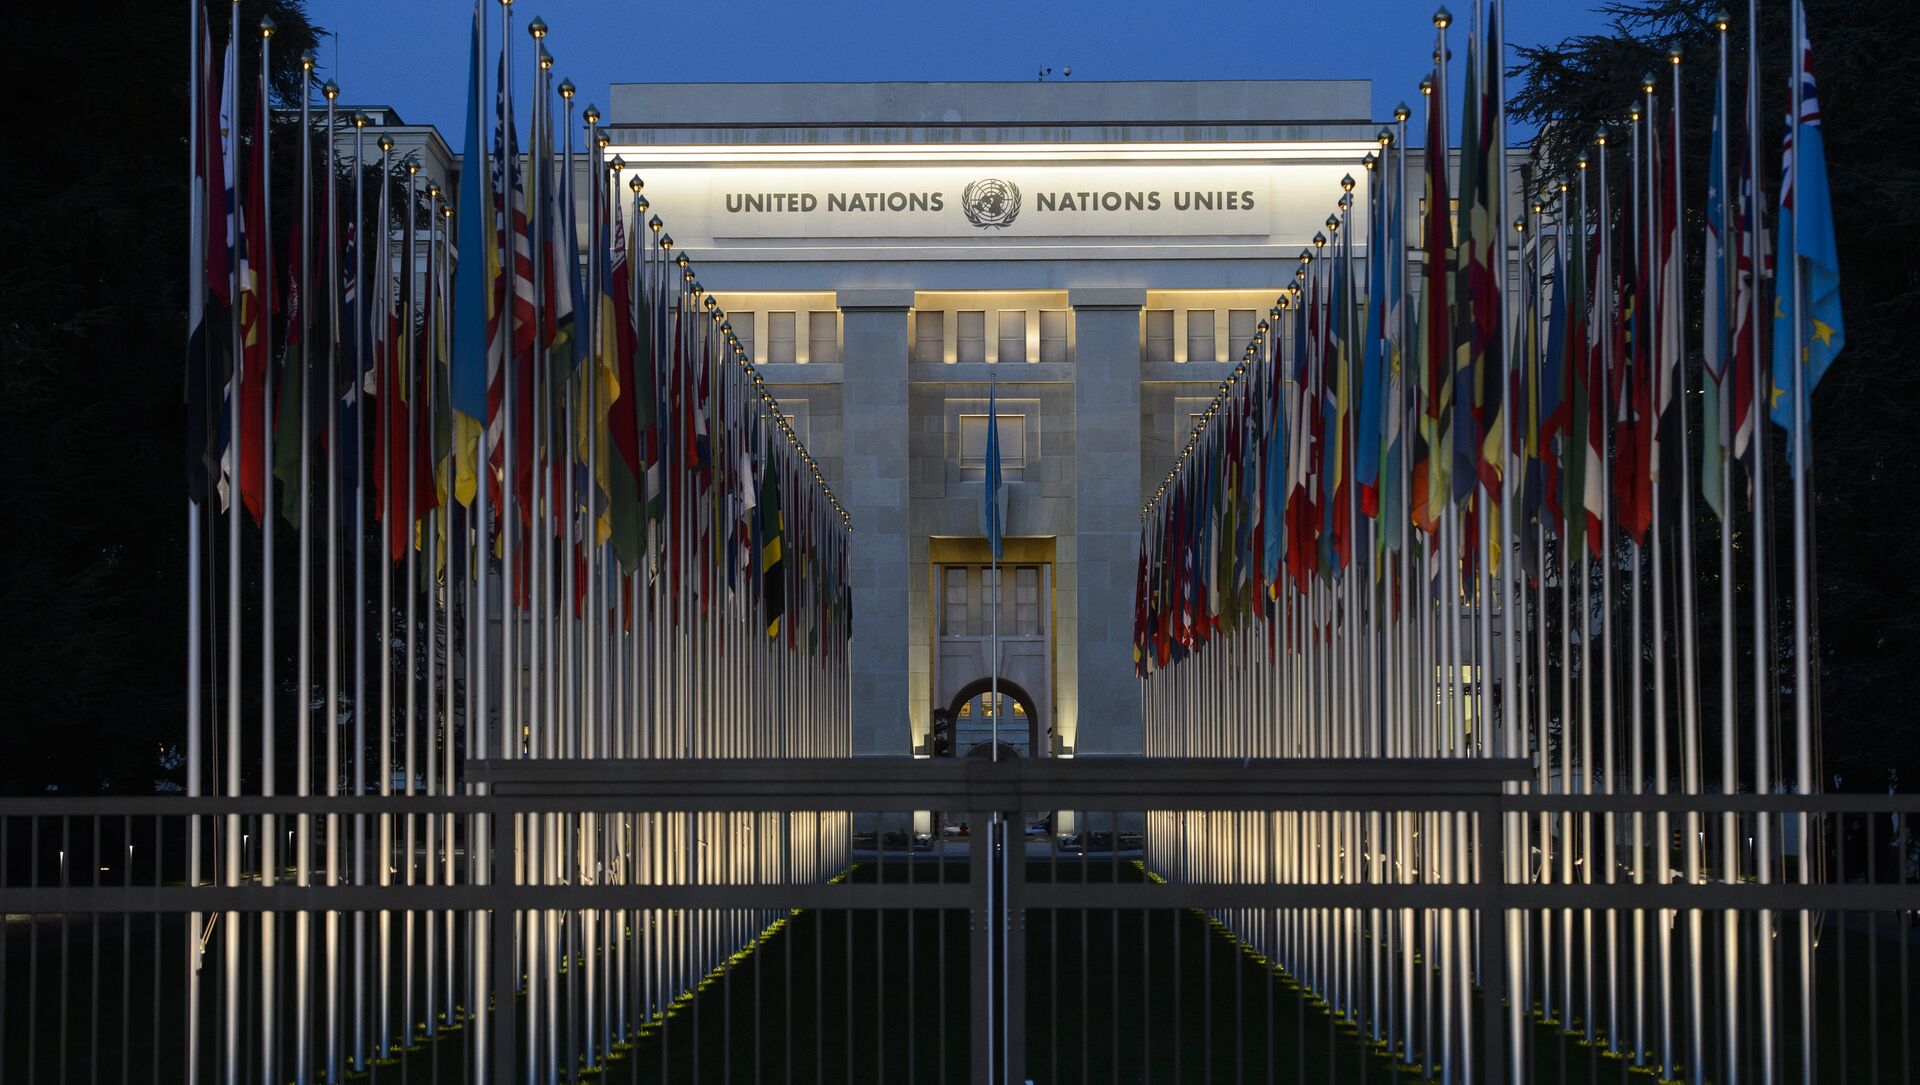 Социальный совет оон. Дворец наций в Женеве. Штаб ООН В Женеве. Здание европейского ООН В Женеве. Здание Лиги наций в Женеве.